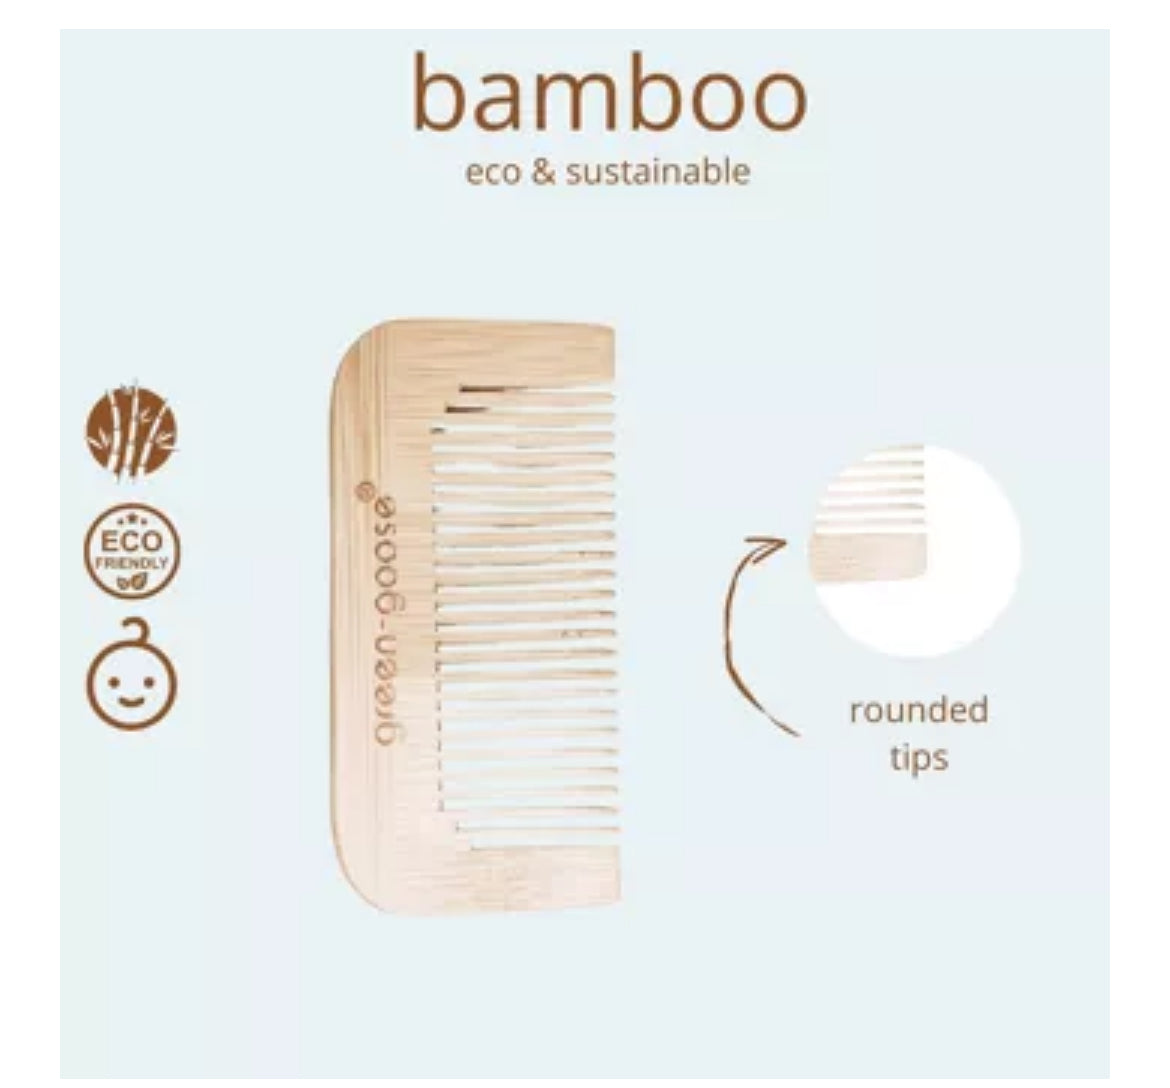 Baby Bamboo Haarpflegepaket